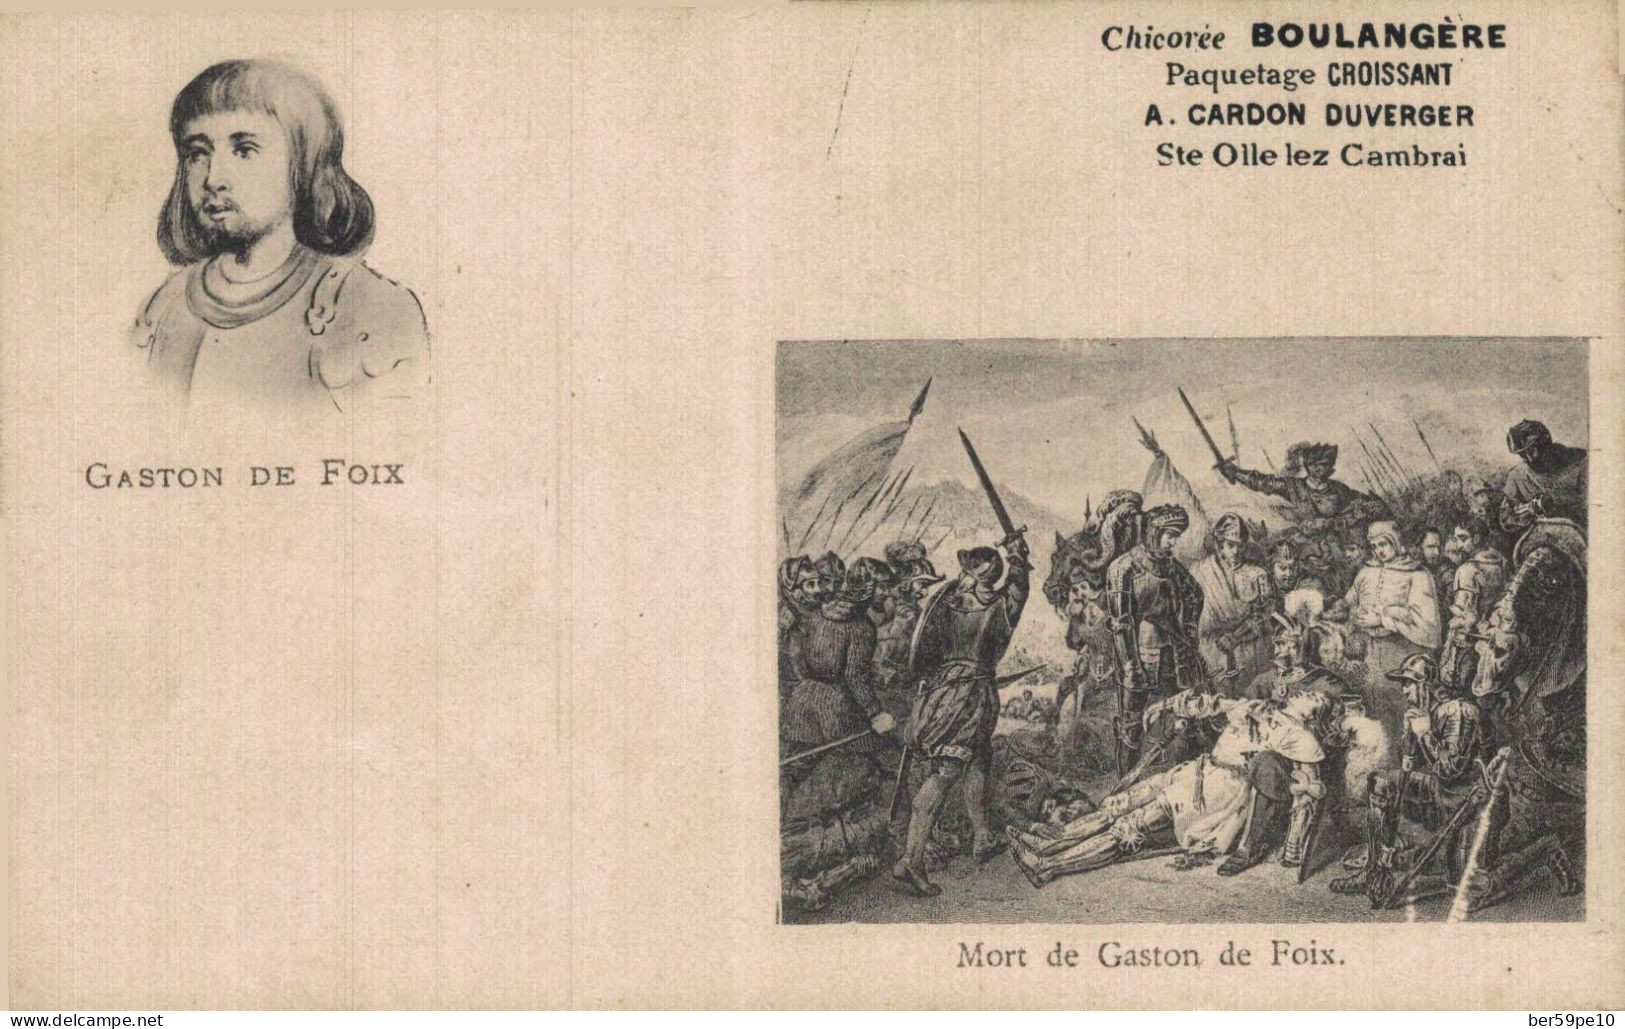 HISTOIRE MEDAILLON DE GASTON DE FOIX MORT DE GASTON DE FOIX PUBLICITE CHICOREE BOULANGERE - History